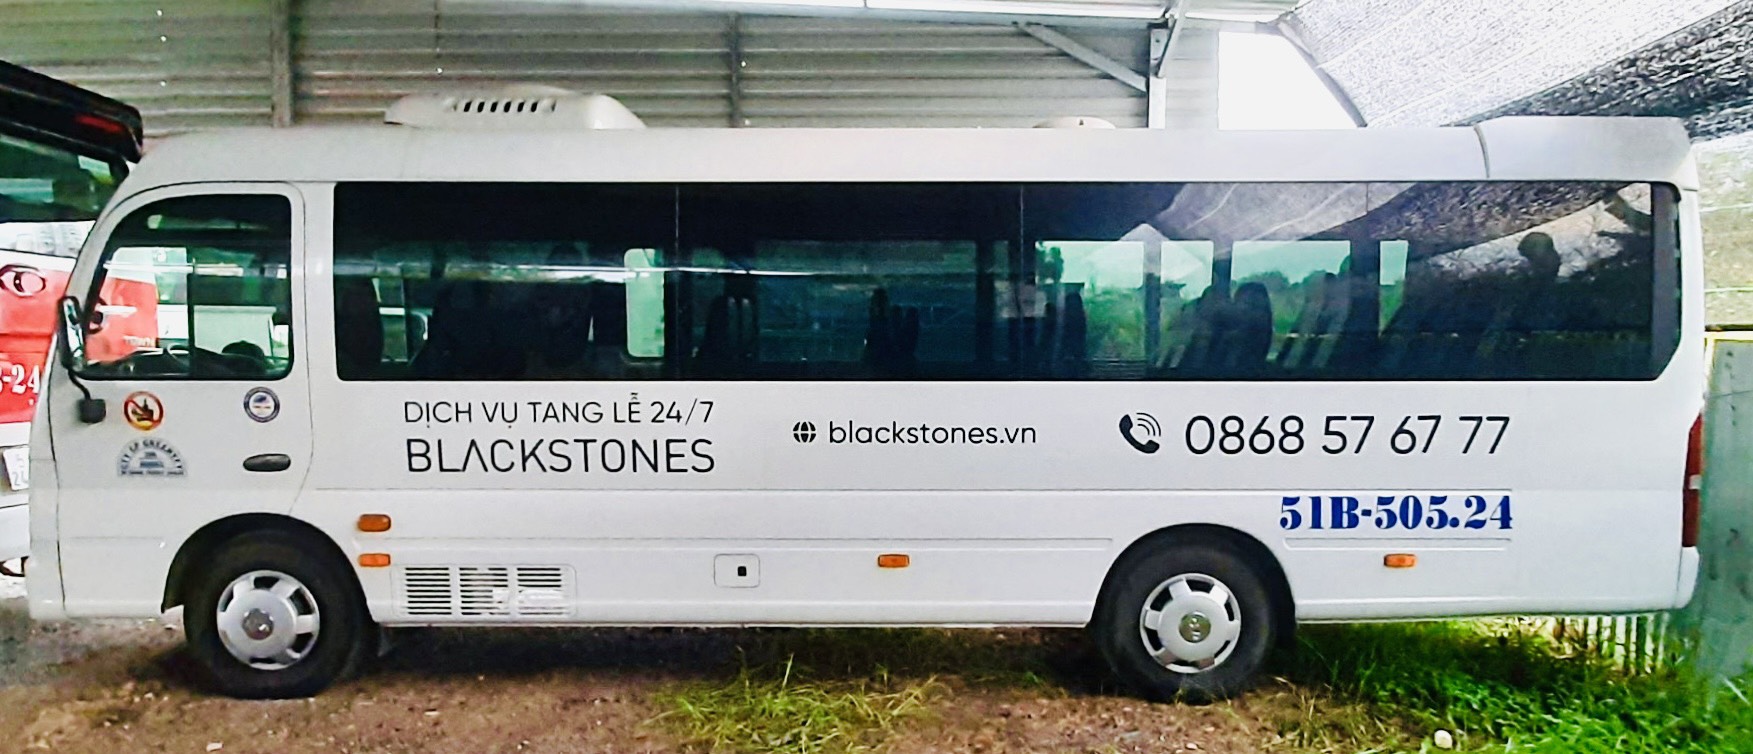 Blackstones - An Táng Đặc Biệt - Phật Giáo